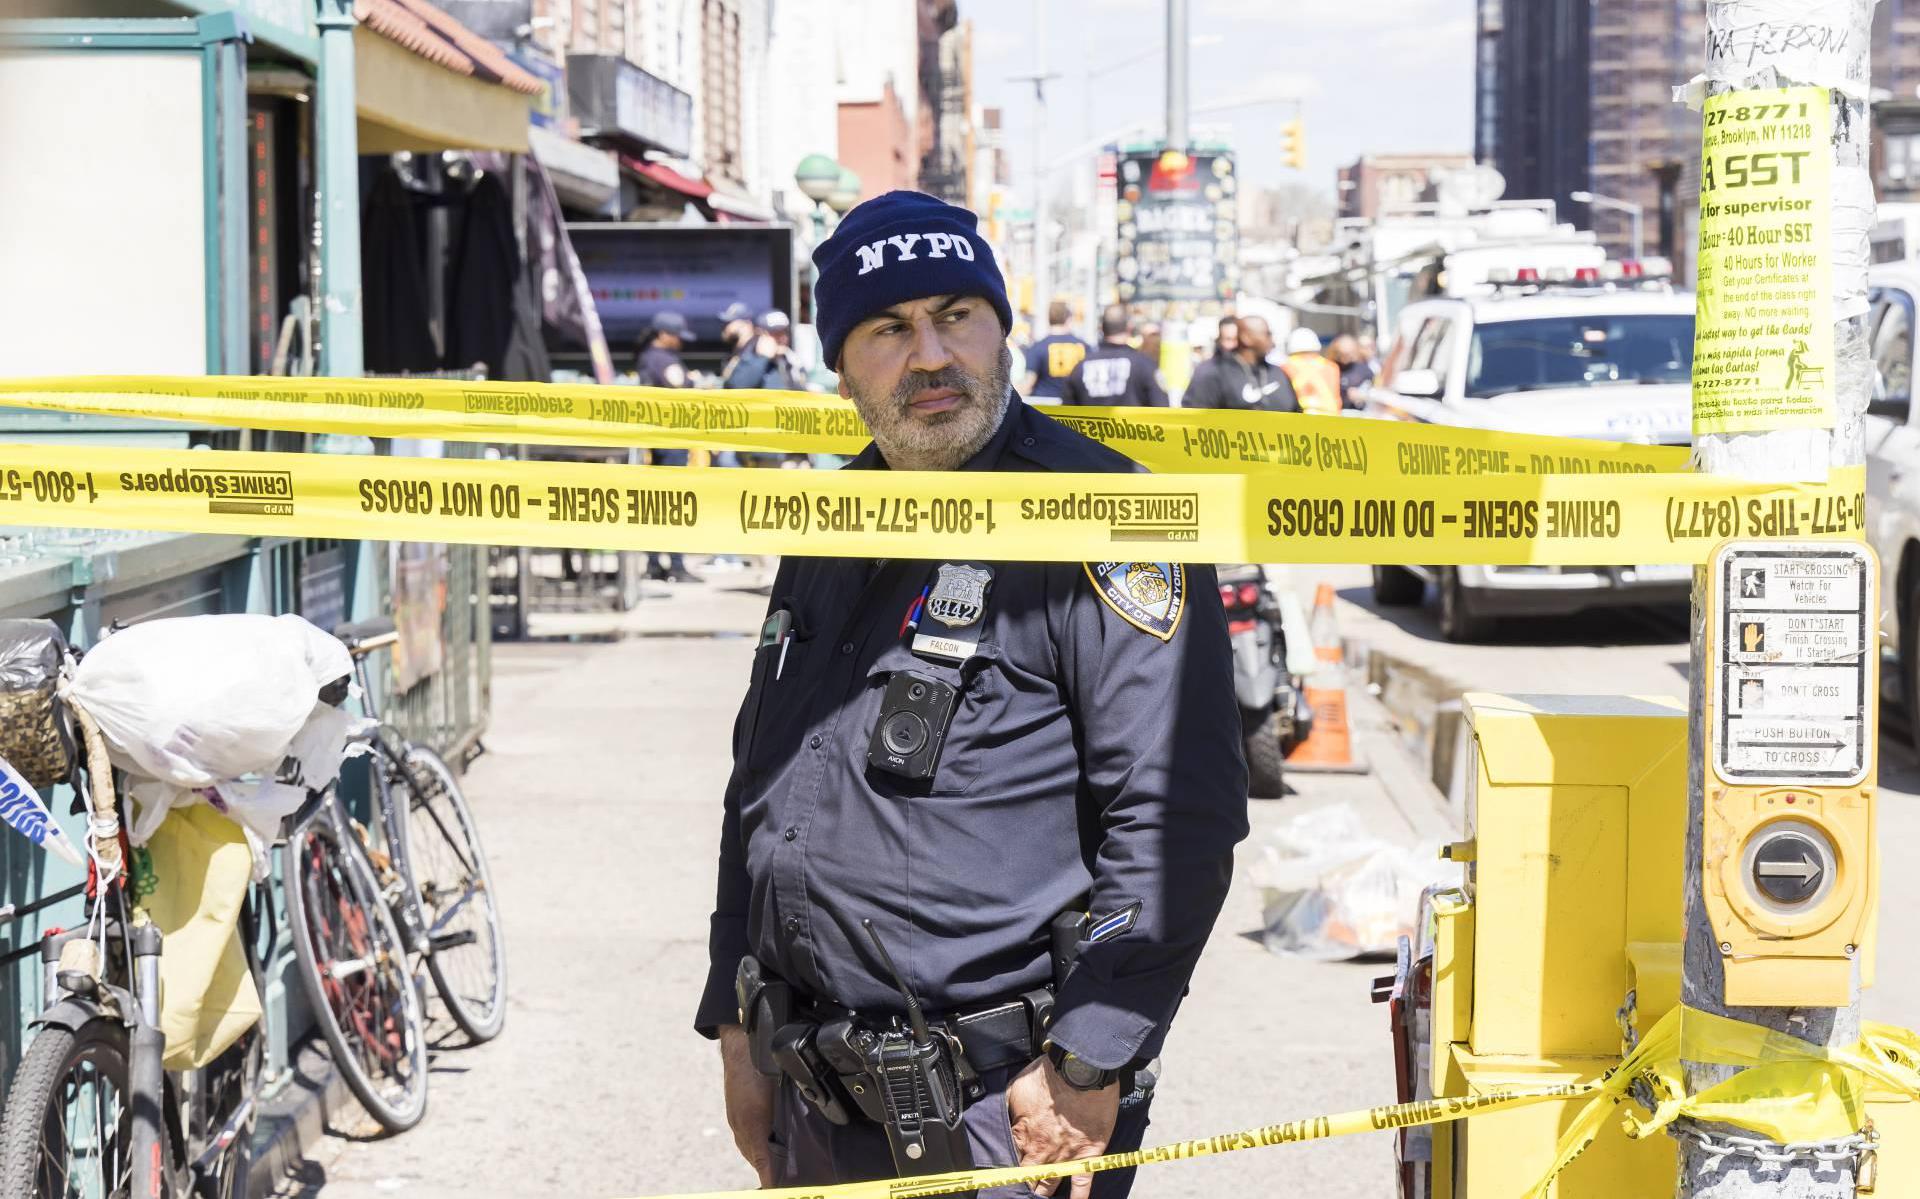 Politie New York maakt jacht op man van 62 na schietpartij metro